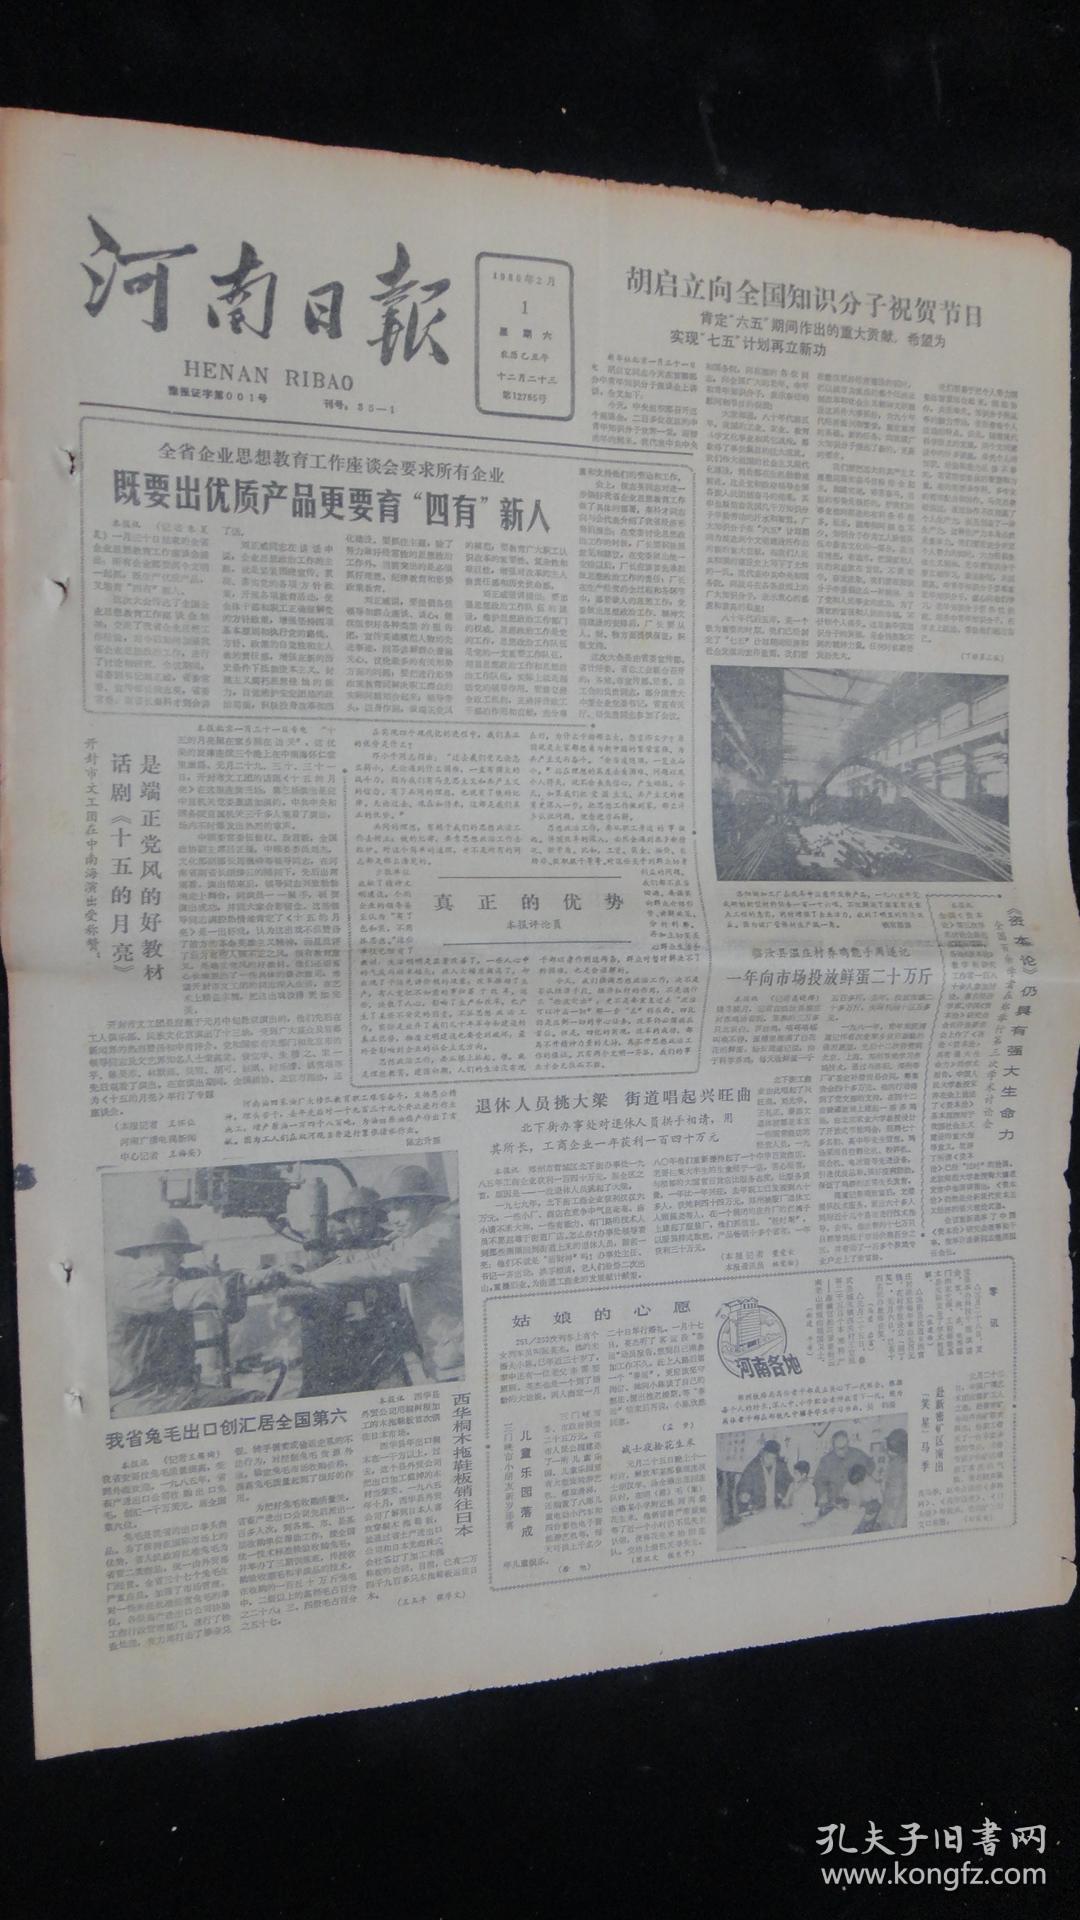 【报纸】河南日报 1986年2月1日【全省企业思